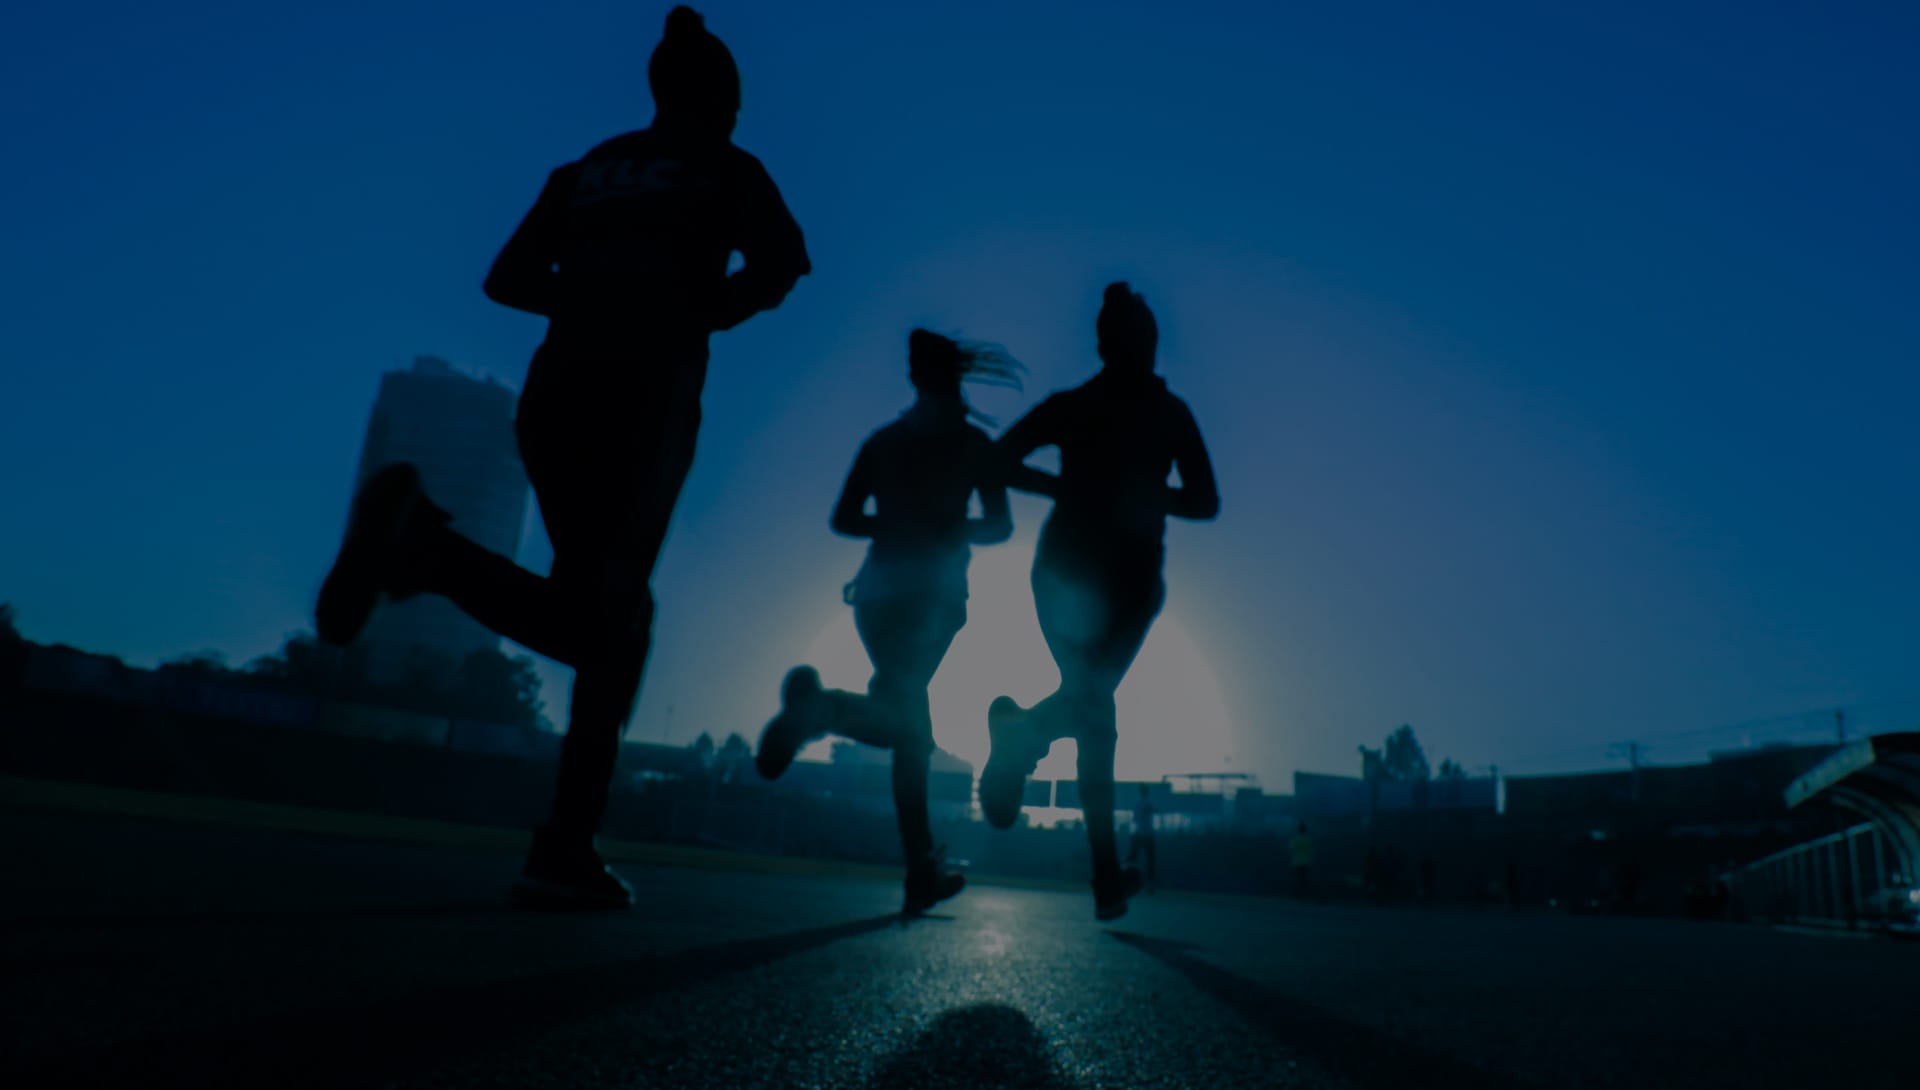 걷기와 달리기 러닝 중 다이어트 체중 감량에 더 효과적인 방법은?